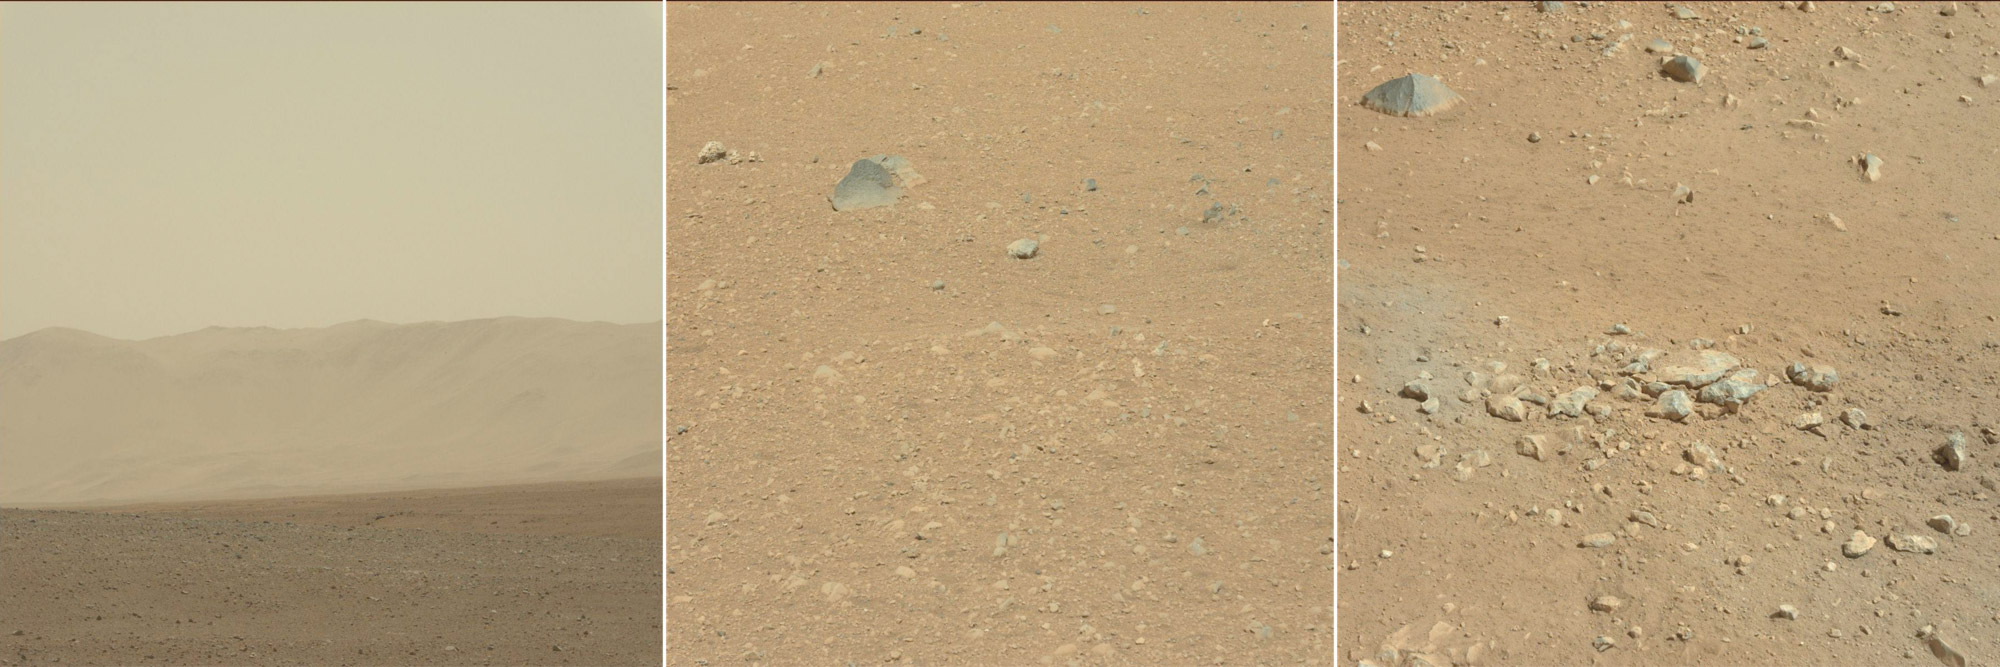 Plus d'une semaine après l'atterrissage de Curiosity, les premières images haute résolution nous montrent le nouvel environnement du rover. Des parois du cratère Gale, qui ressemble à des montagnes terrestres, aux rochers environnants l'engin, le site du&nbsp;rover a de quoi faire pour nous montrer en quoi Mars est différente de la Terre ! © Nasa/JPL-Caltech/MSSS